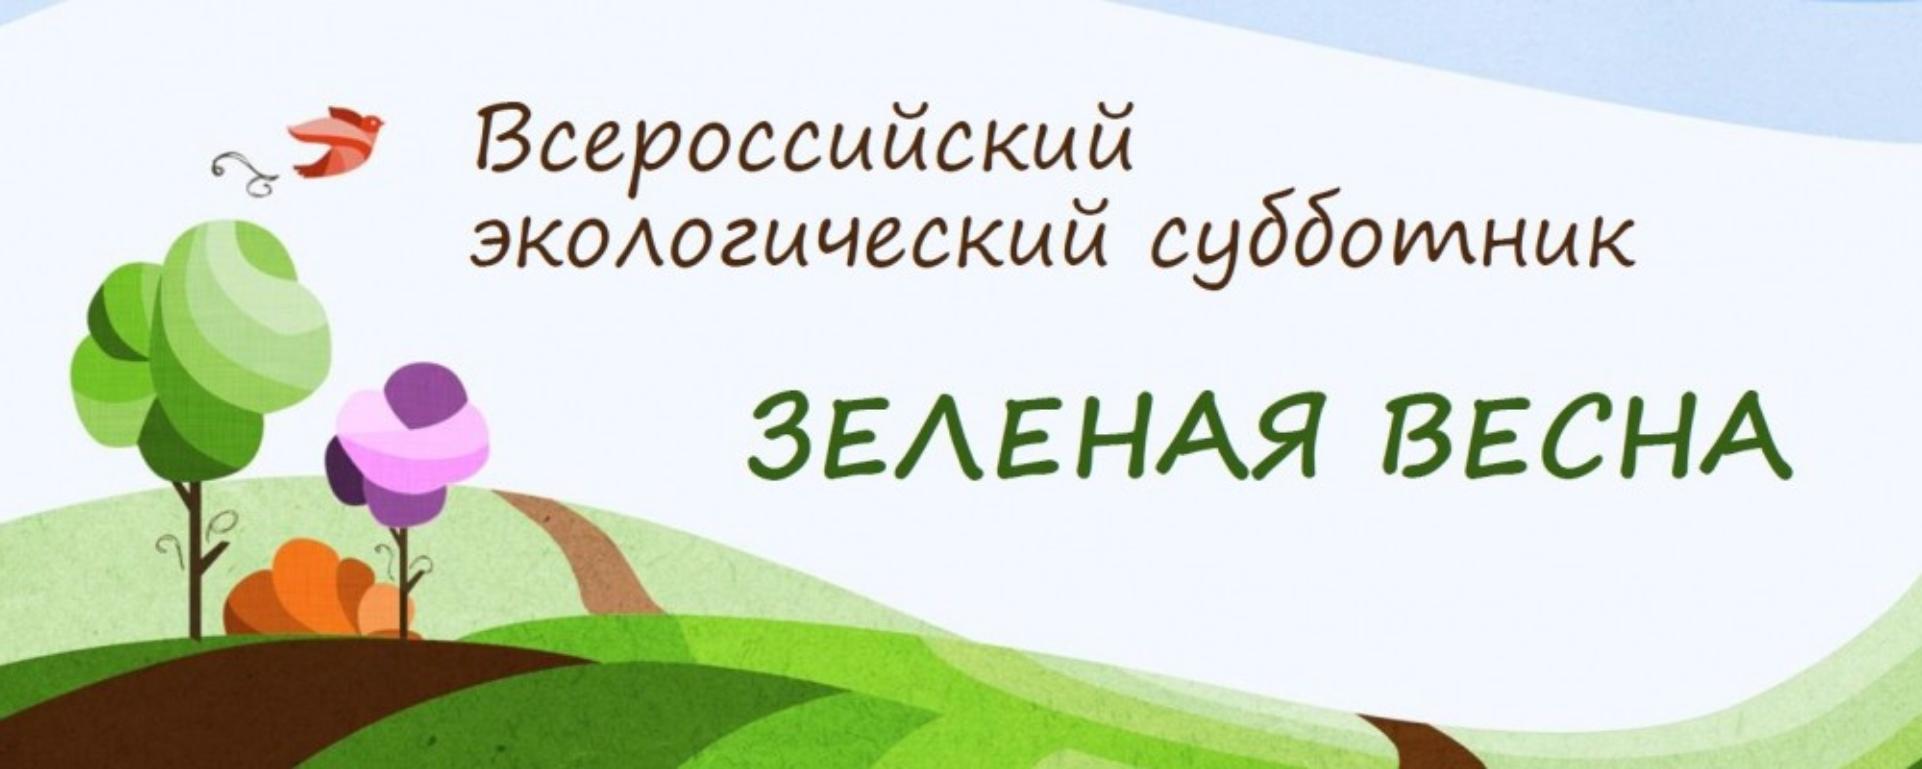 «Экология России» выступит партнером Всероссийского экологического субботника «Зеленая весна-2016»